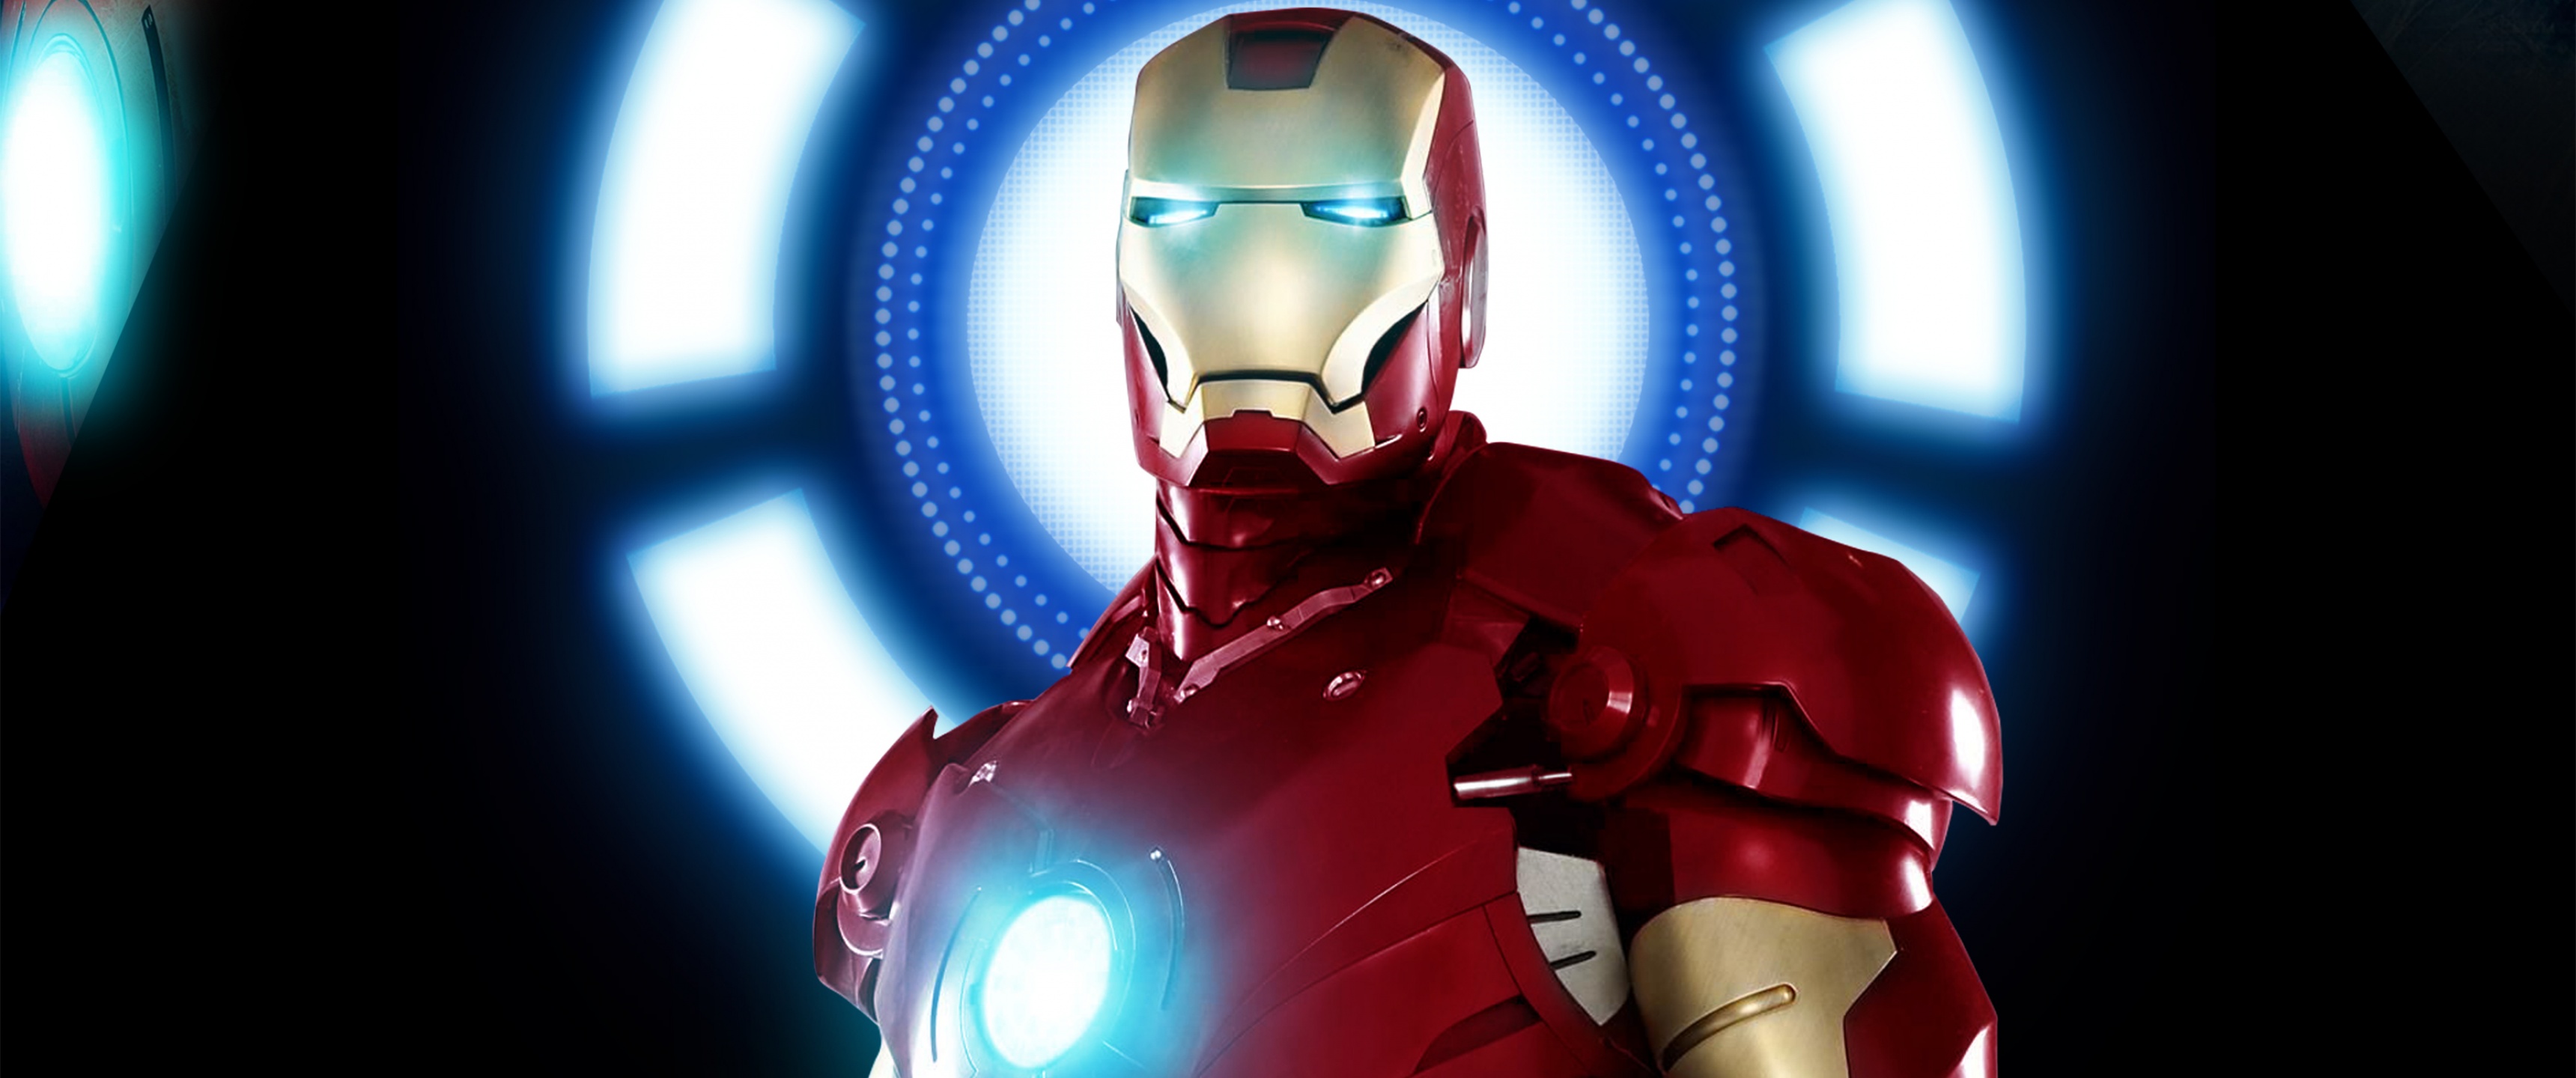 Đồ họa siêu nét 4K cùng chủ đề Iron Man sẽ khiến bạn thấy như đang xem bộ phim siêu anh hùng. Hãy chiêm ngưỡng hình nền Iron Man 4K để đắm chìm trong thế giới của người sắt.